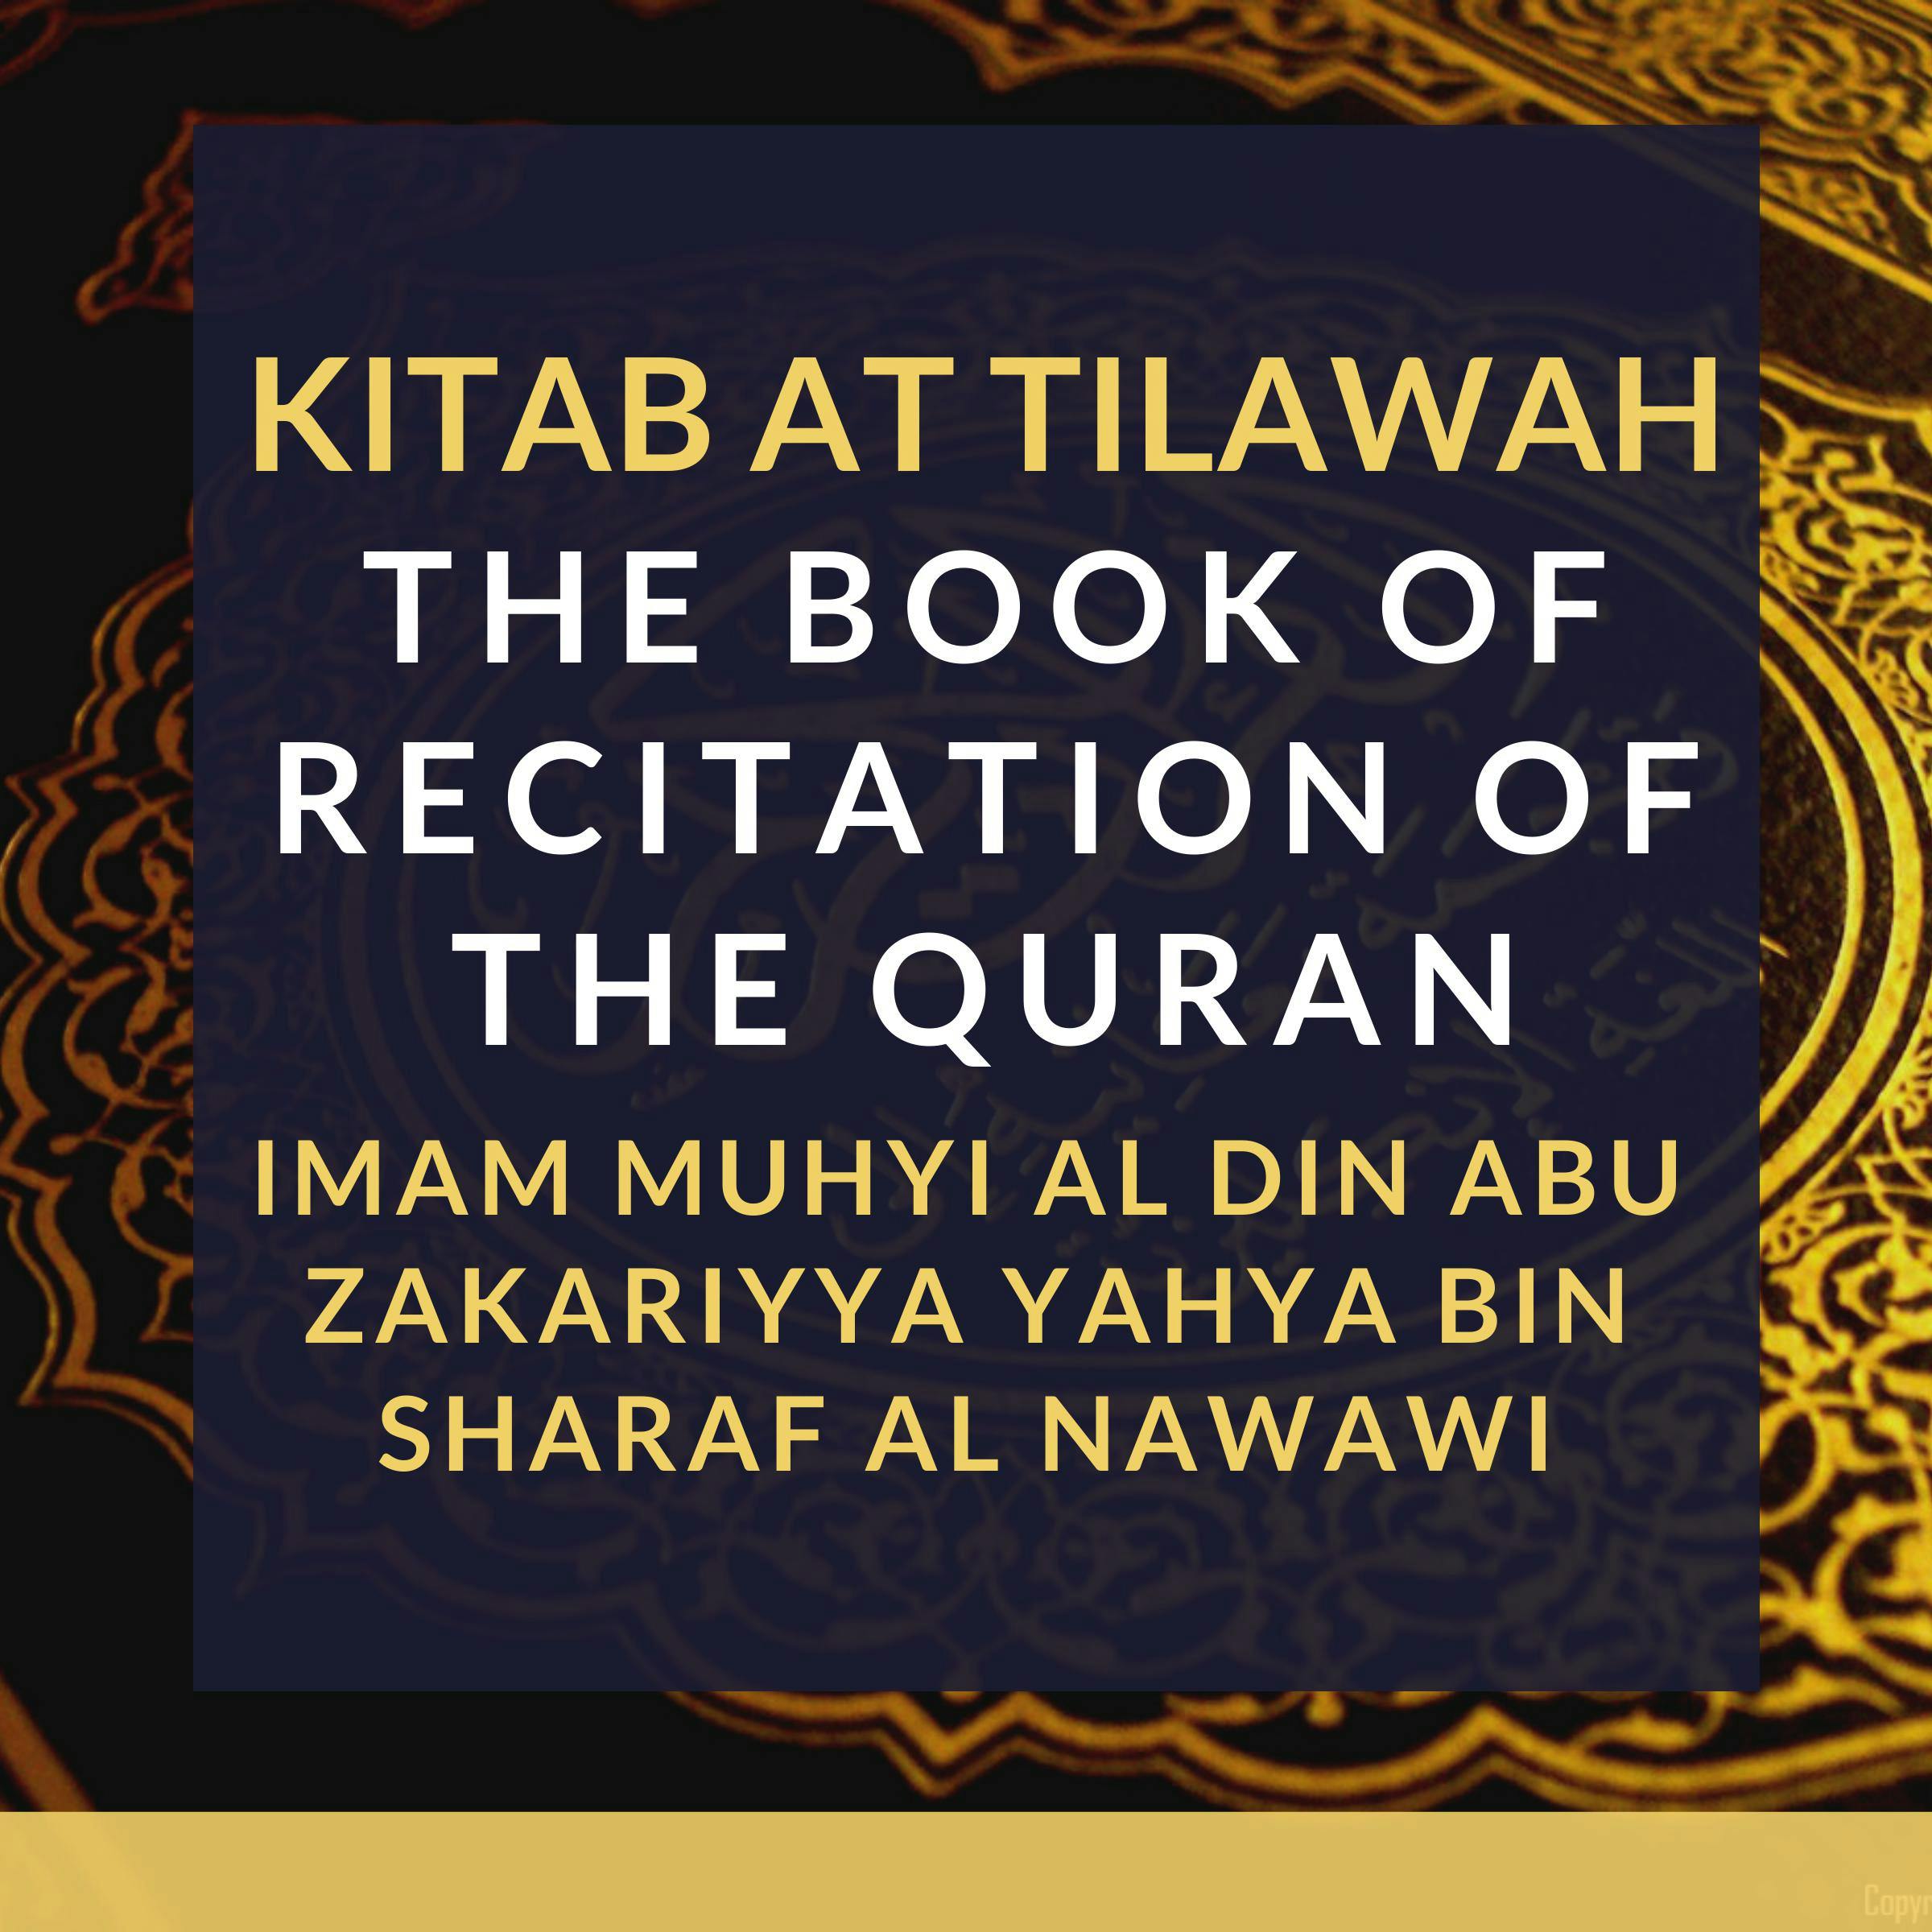 Kitab At Tilawah - The Book of Recitation of the Qur’an - Imam Muhyi al-Din Abu Zakariyya Yahya bin Sharaf al-Nawawi